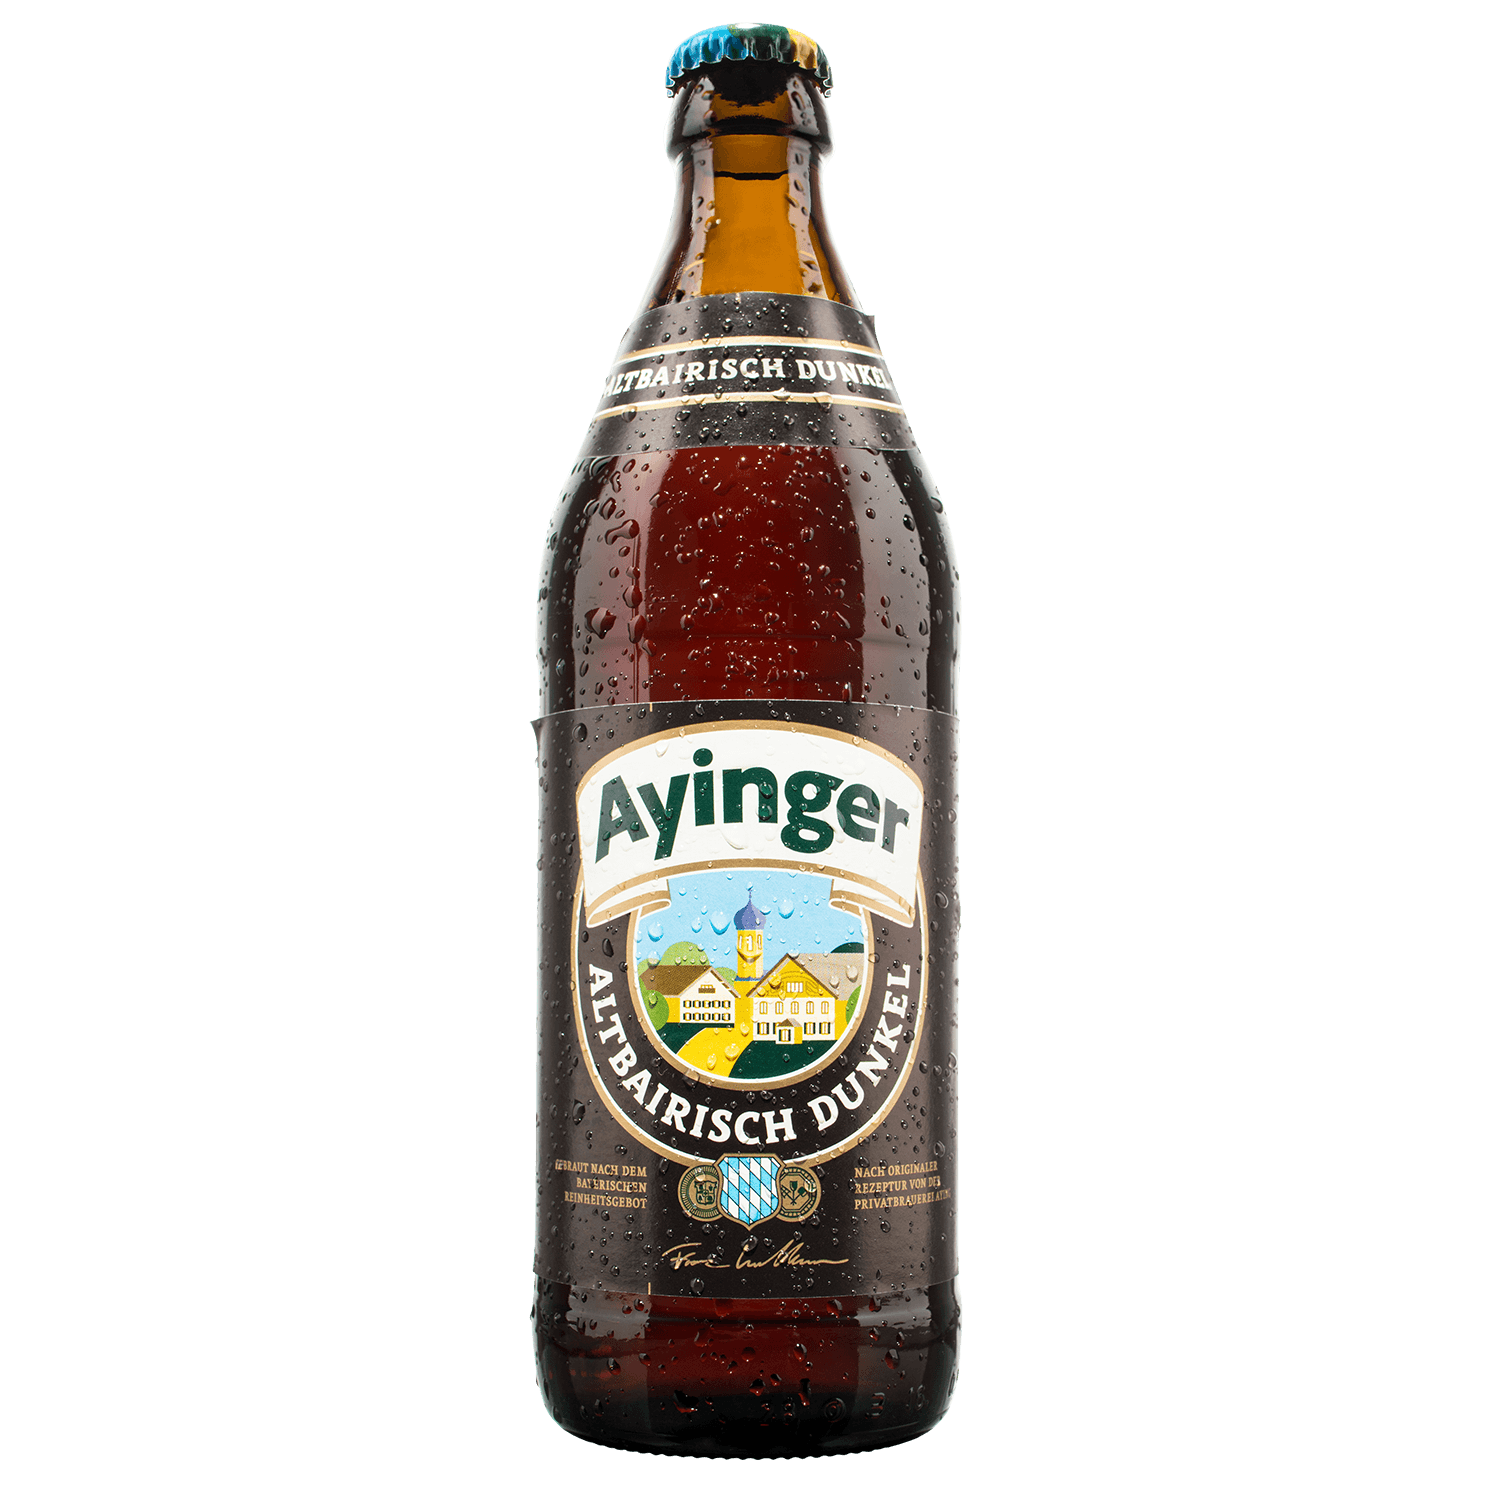 Ayinger Logo - Ayinger Altbairisch Dunkel | Beer Hawk